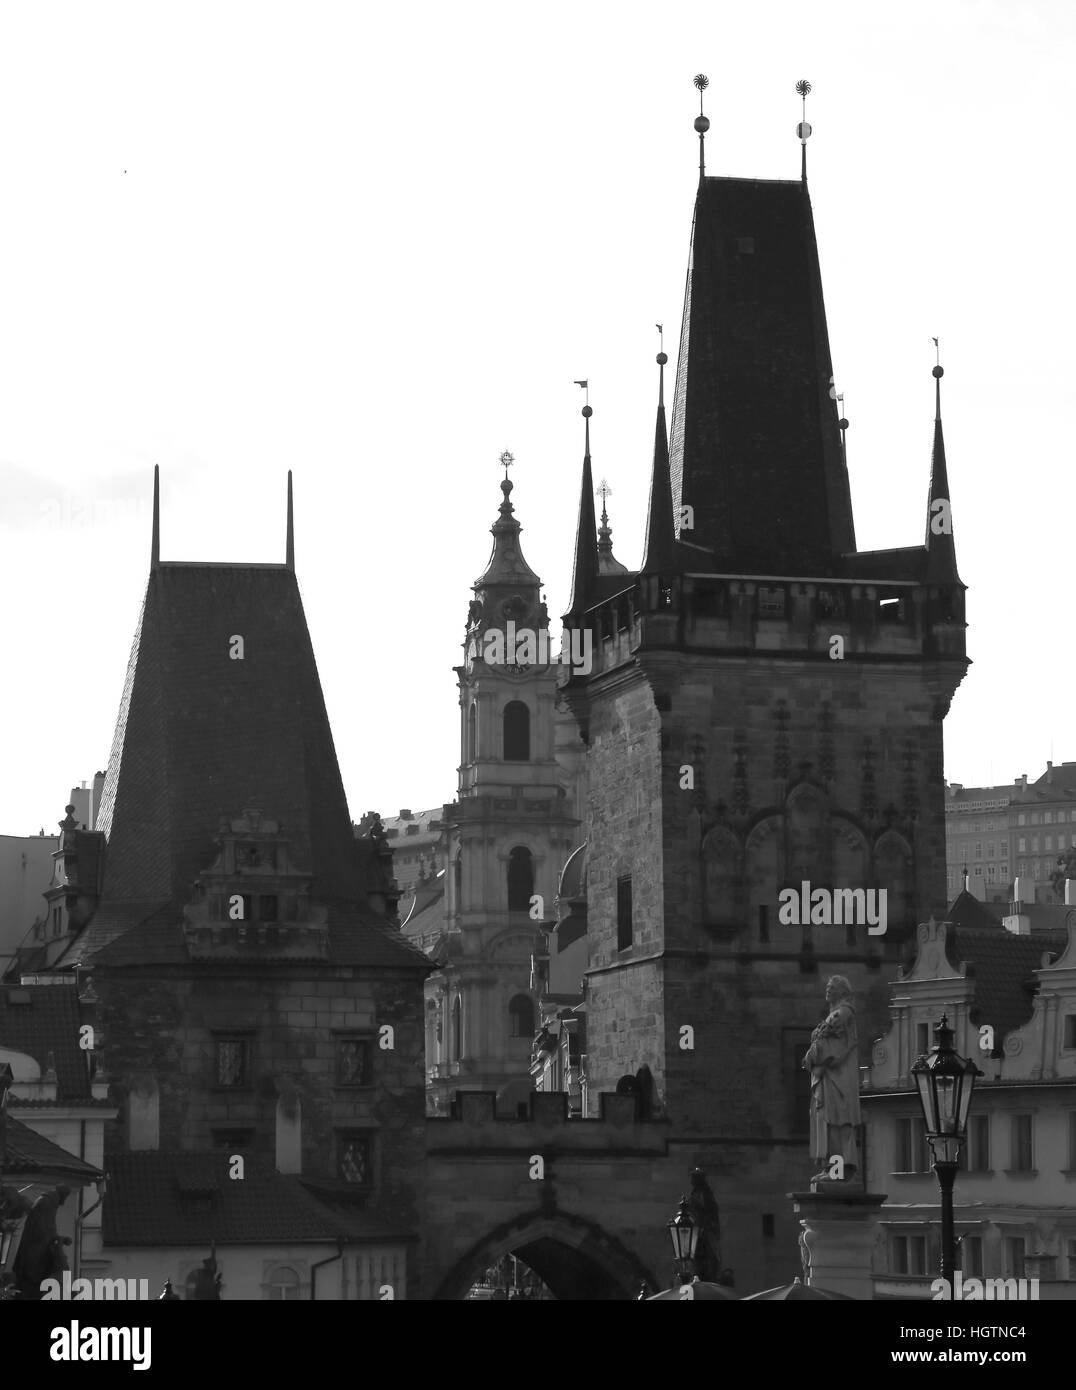 Skyline von Prag mit dem mittelalterlichen Turm auf der Karlsbrücke in schwarz-weiß-Effekt Stockfoto